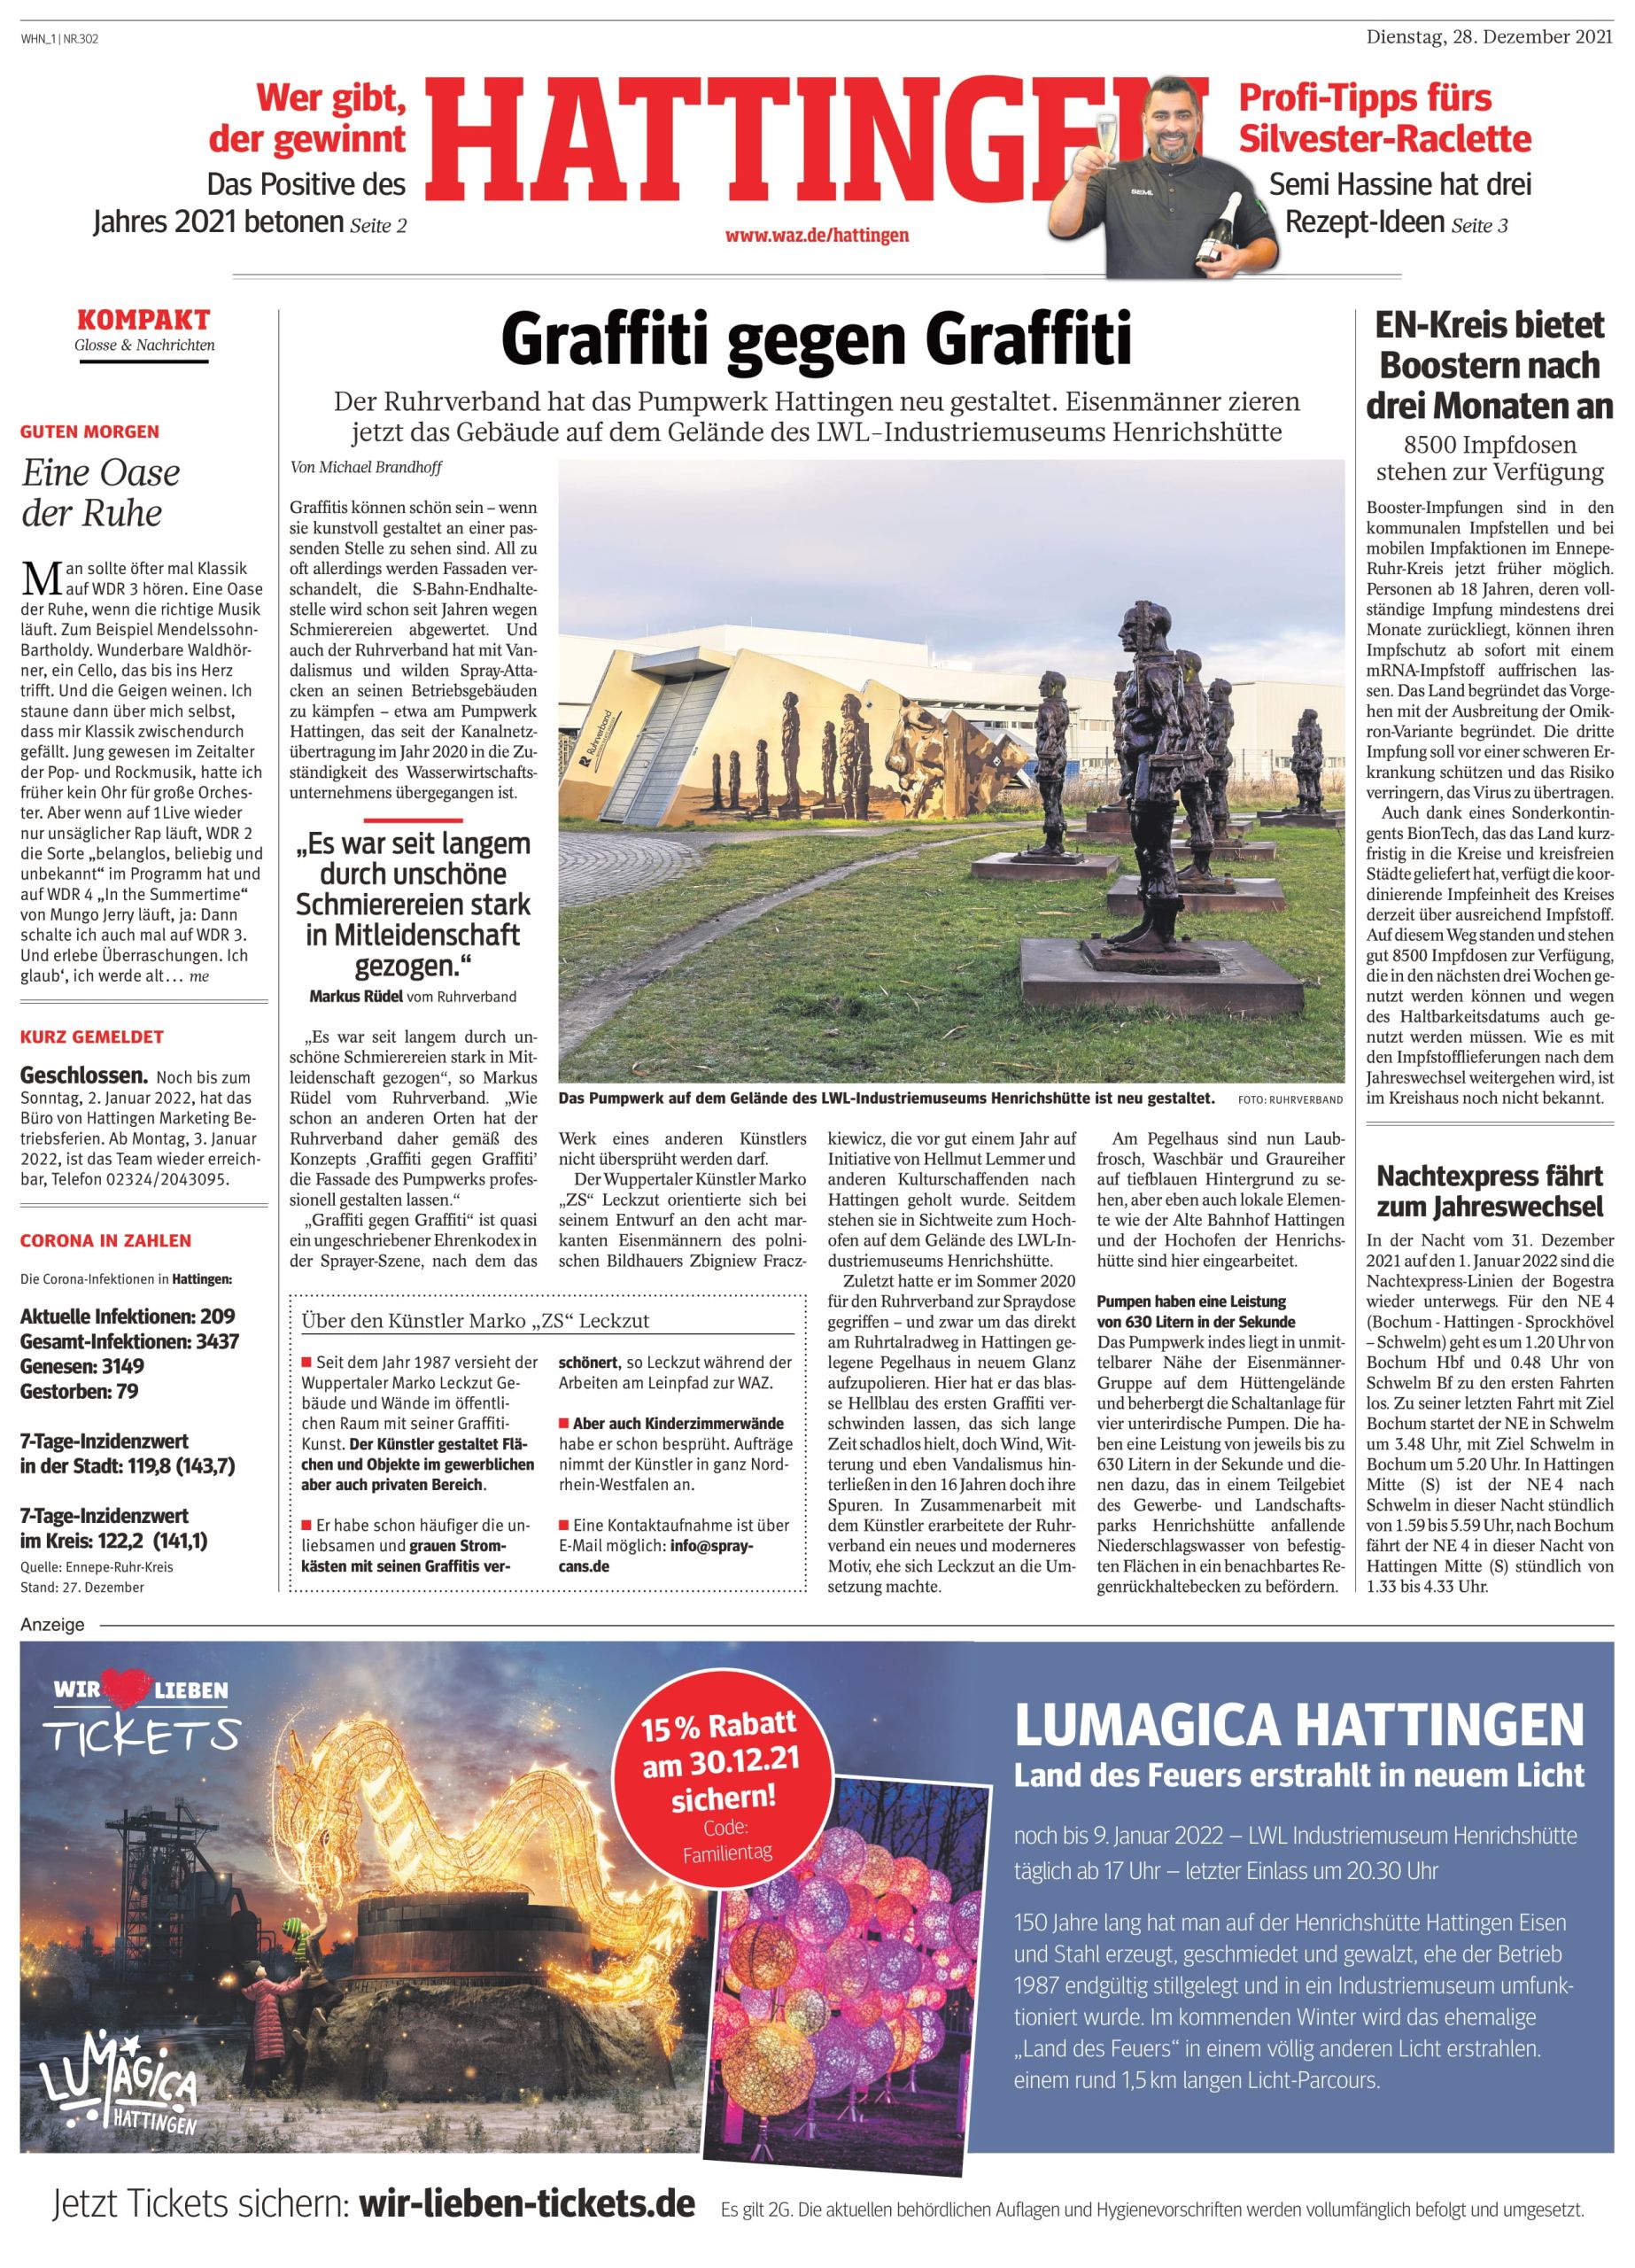 LUMAGICA Anzeige Hattingen Westdeutsche Allgemeine Zeitung